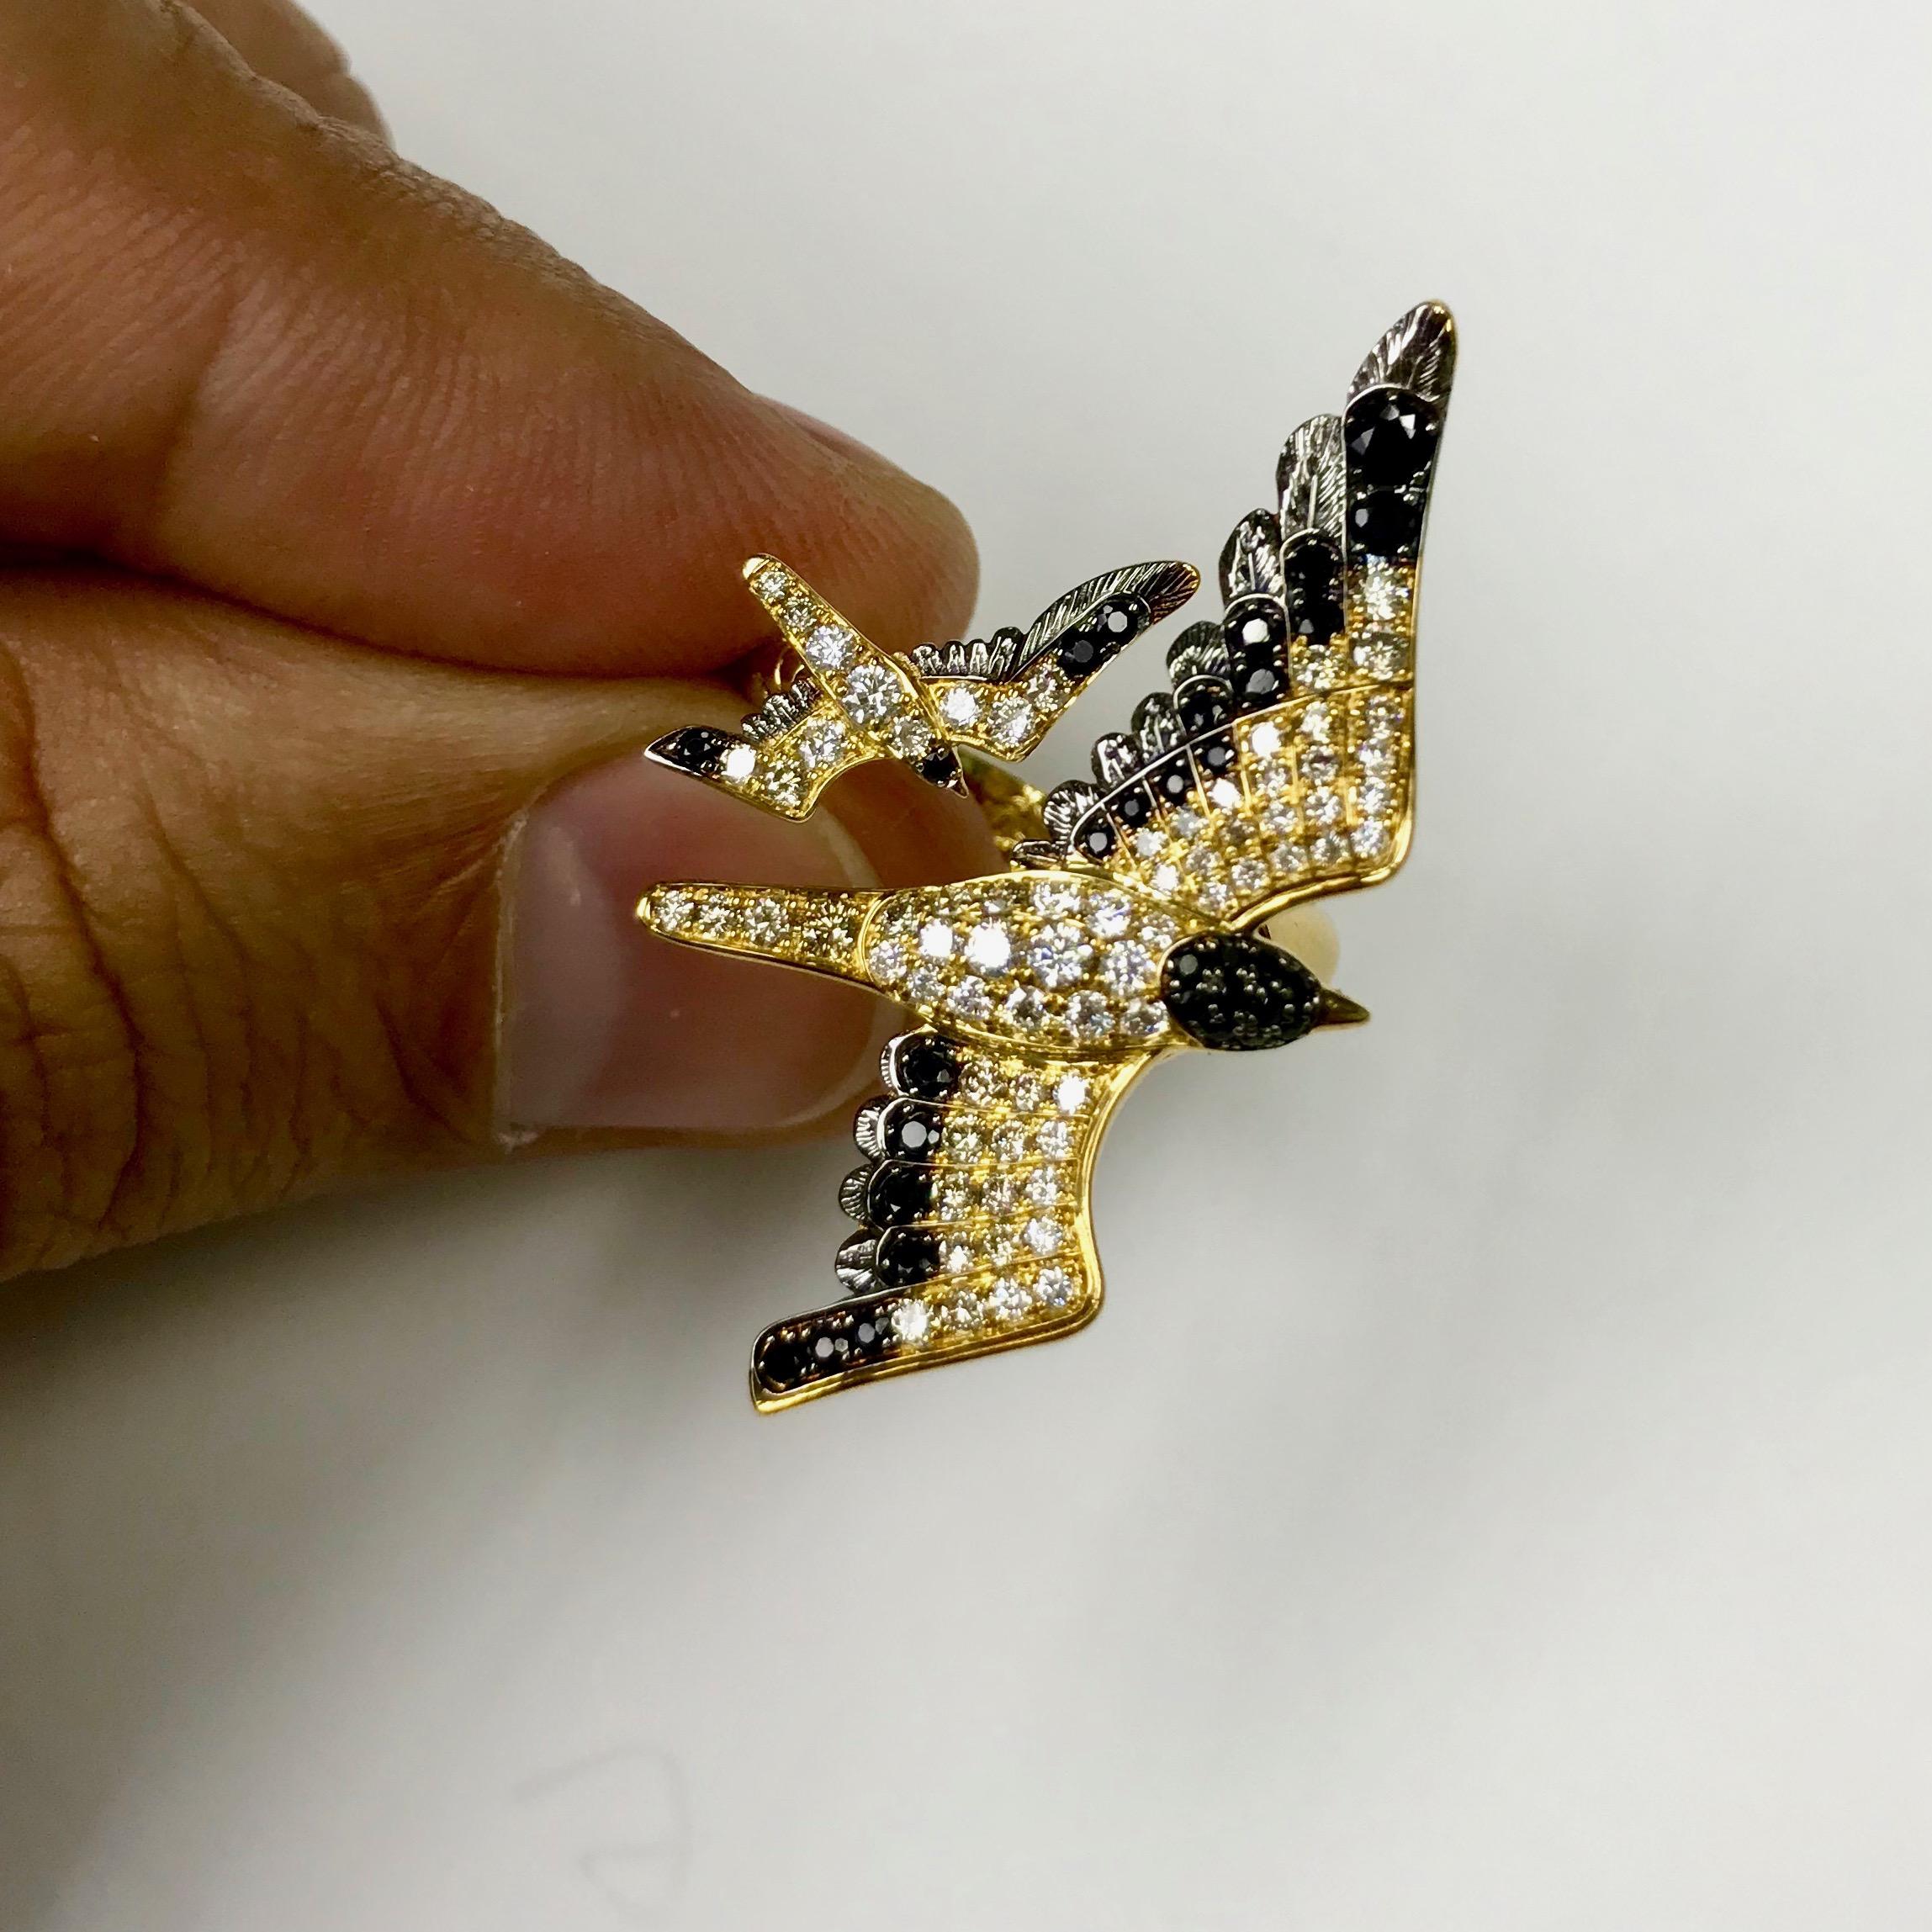 Weißer und brauner Diamant Schwarzer Saphir 18 Karat Gelbgold Seemöwenring
Hochdetaillierter Möwenring. Die Kombination aus weißen und champagnerfarbenen Diamanten erweckt den Eindruck, dass sie lebendig sind. Dieser Ring stellt zwei Möwen dar, die